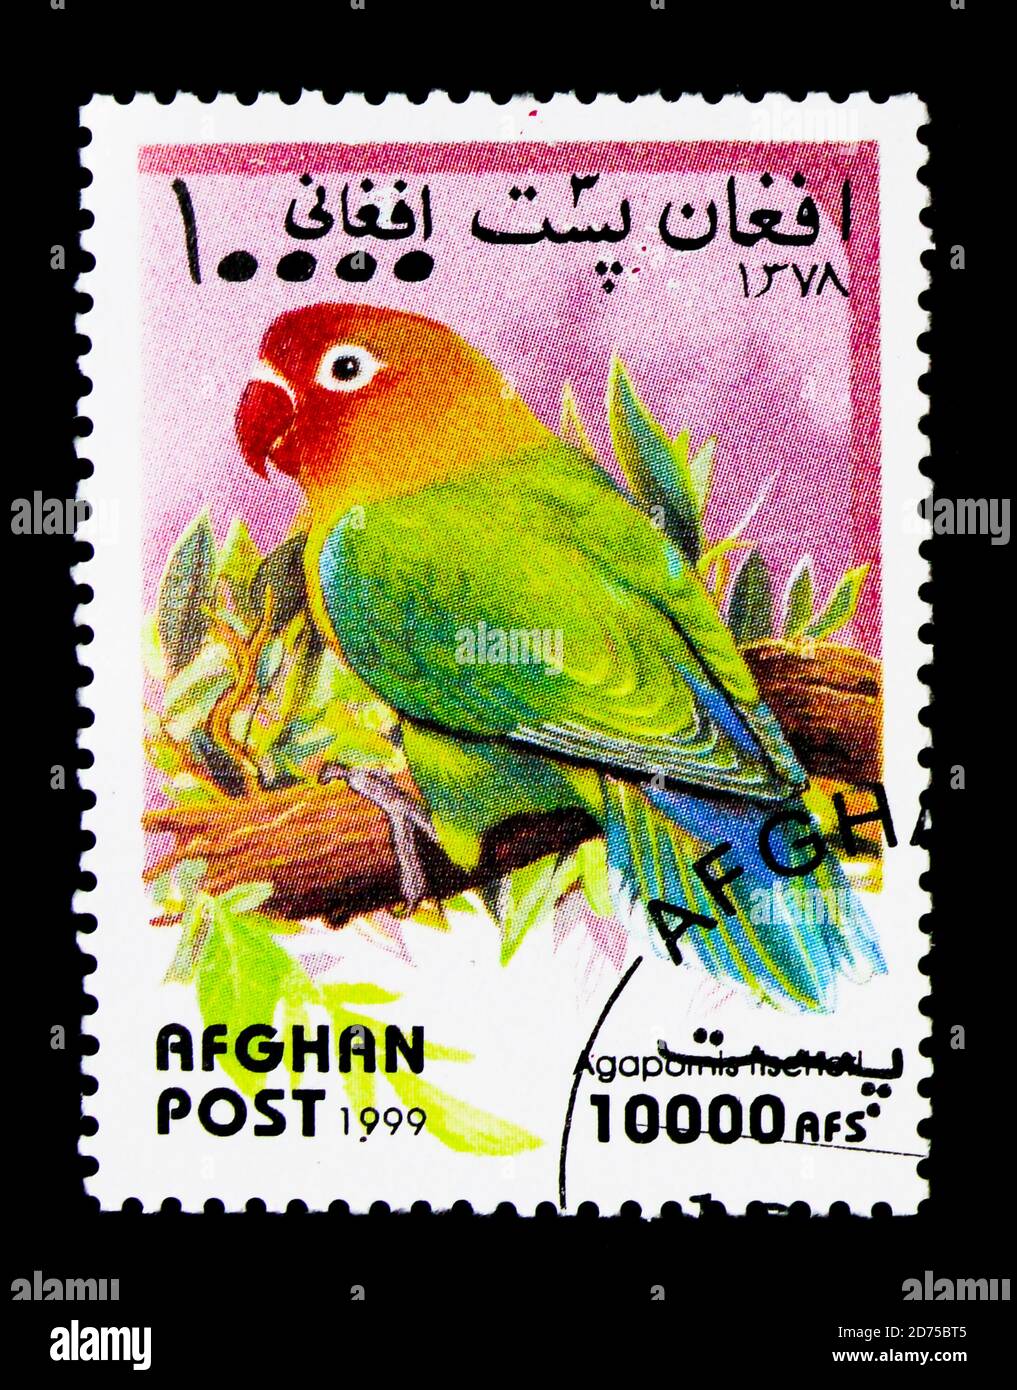 MOSCOU, RUSSIE - 25 NOVEMBRE 2017 : un timbre imprimé en Afghanistan montre le lovebird de Fischer (Agapornis fischeri), série Parrots, vers 1999 Banque D'Images